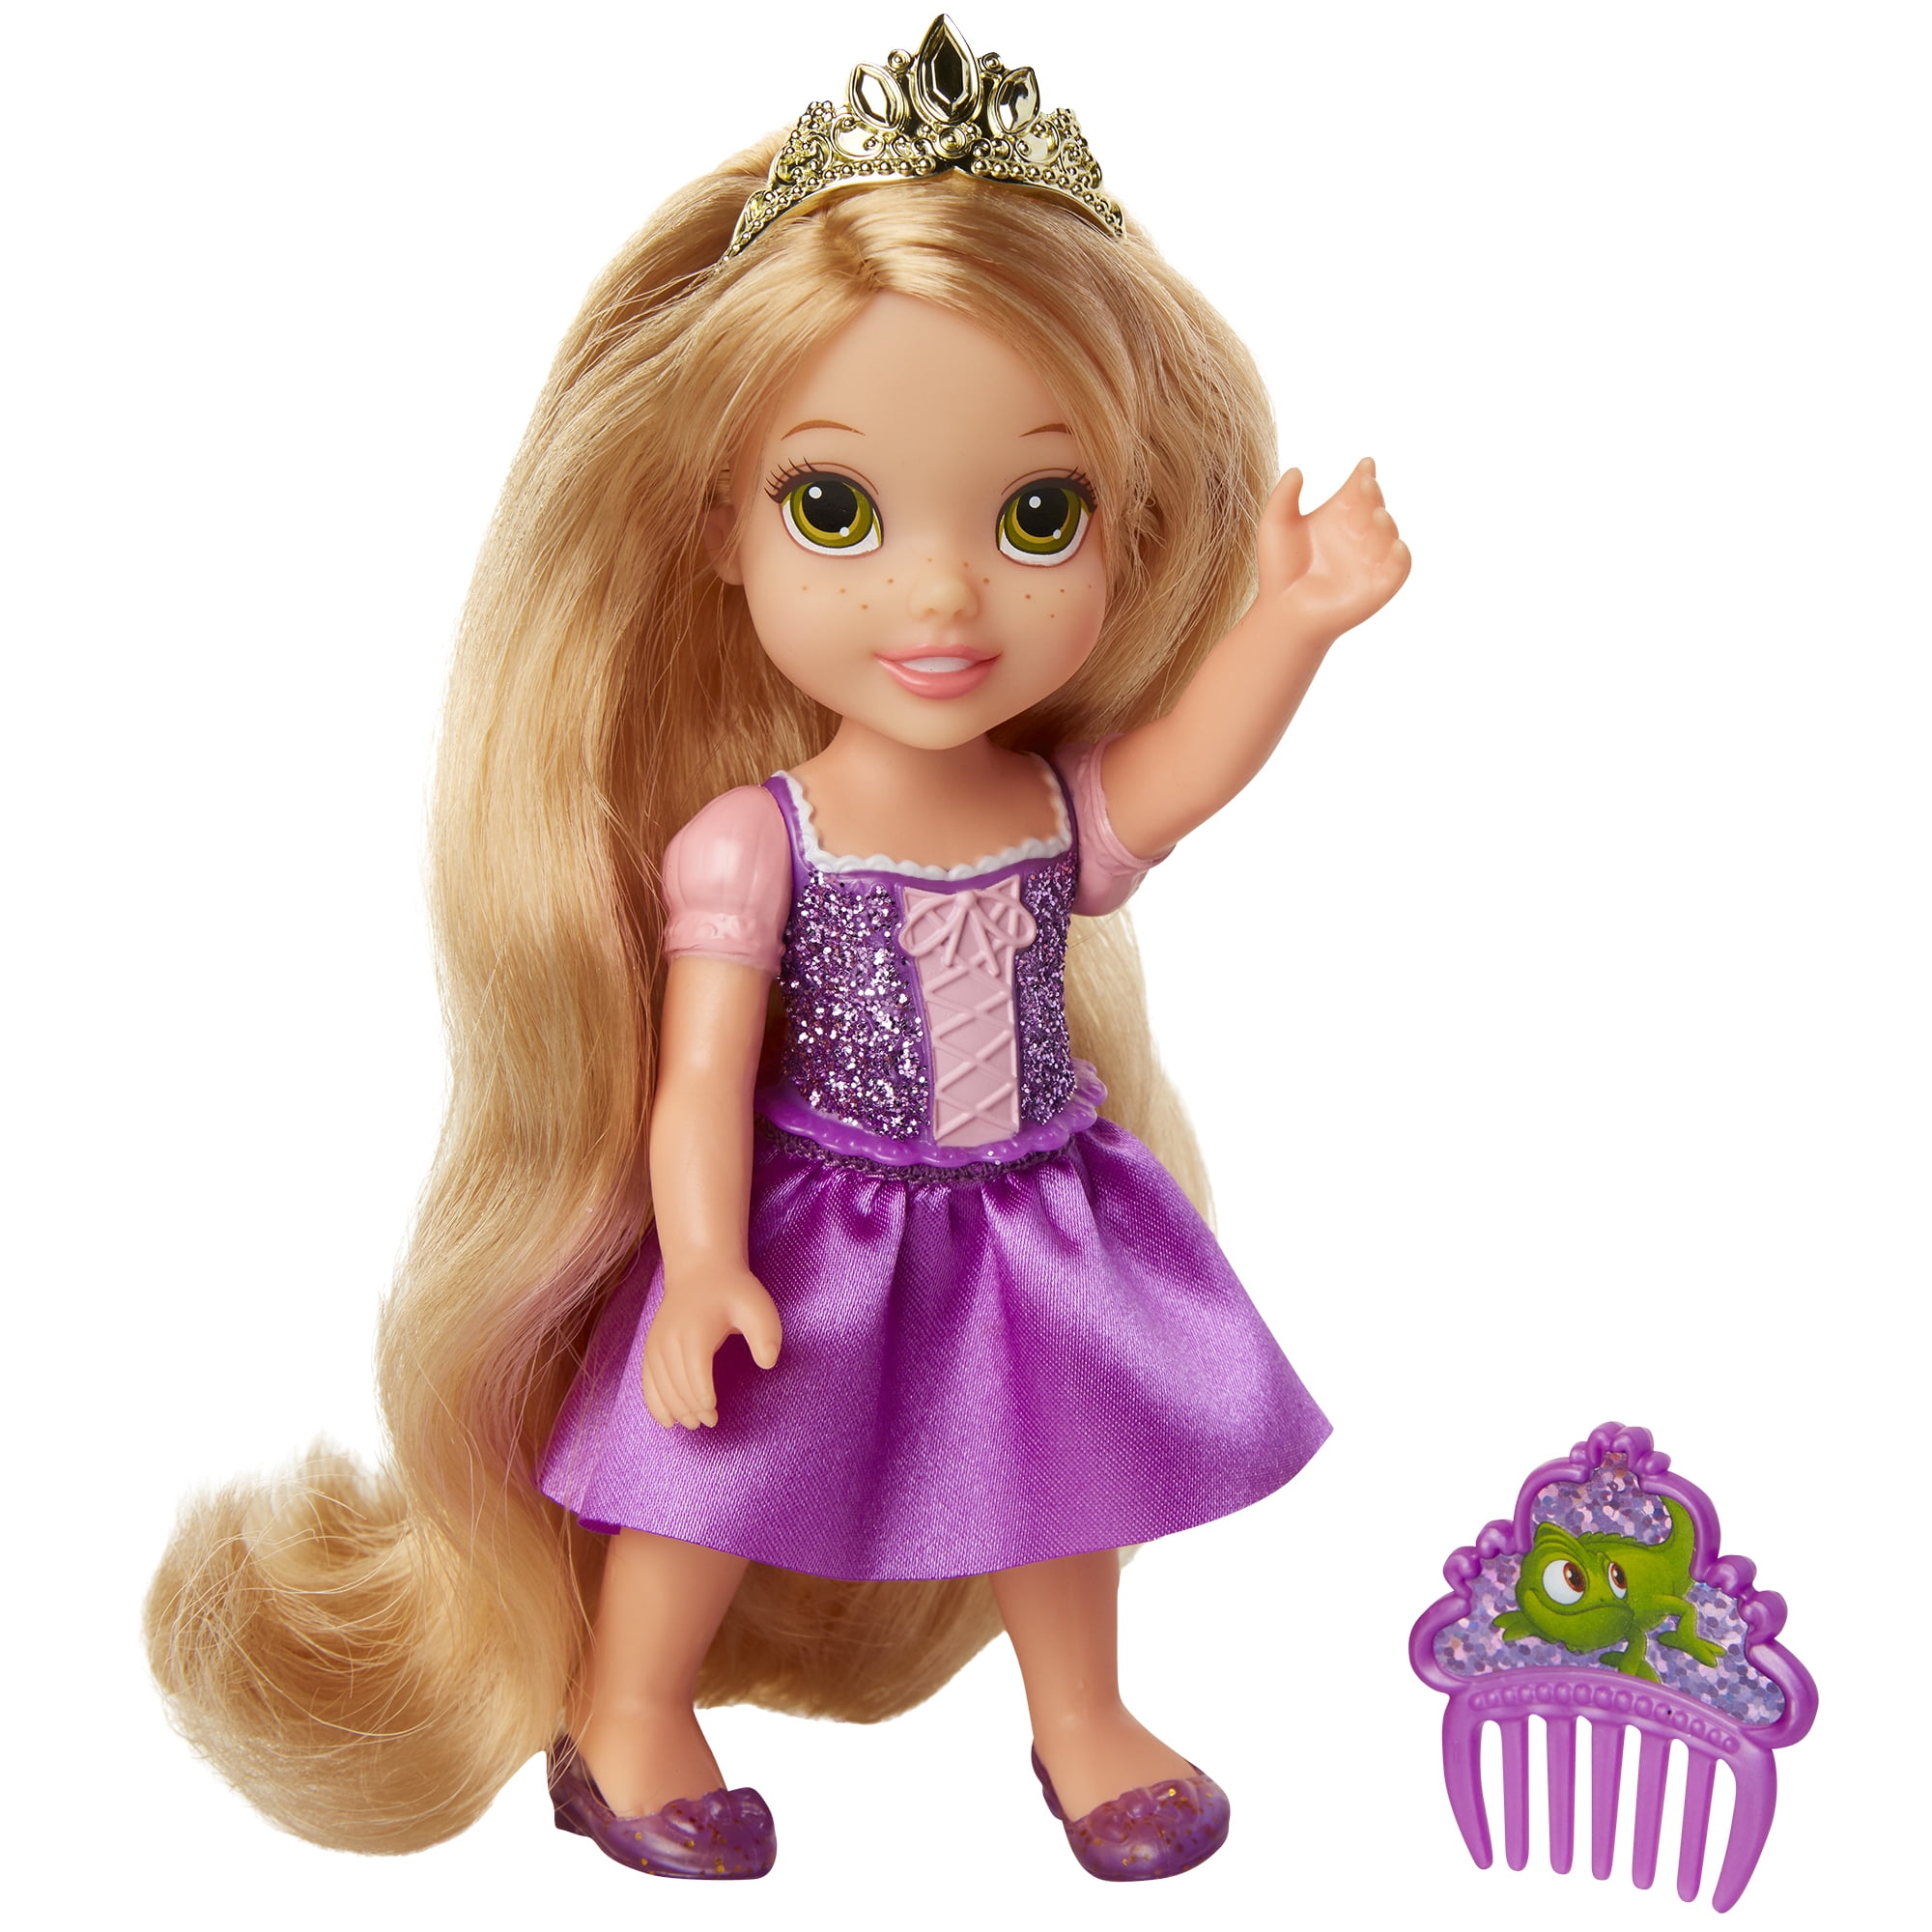 Details about   Disney Princess Petite Rapunzel 6" Doll with comb 